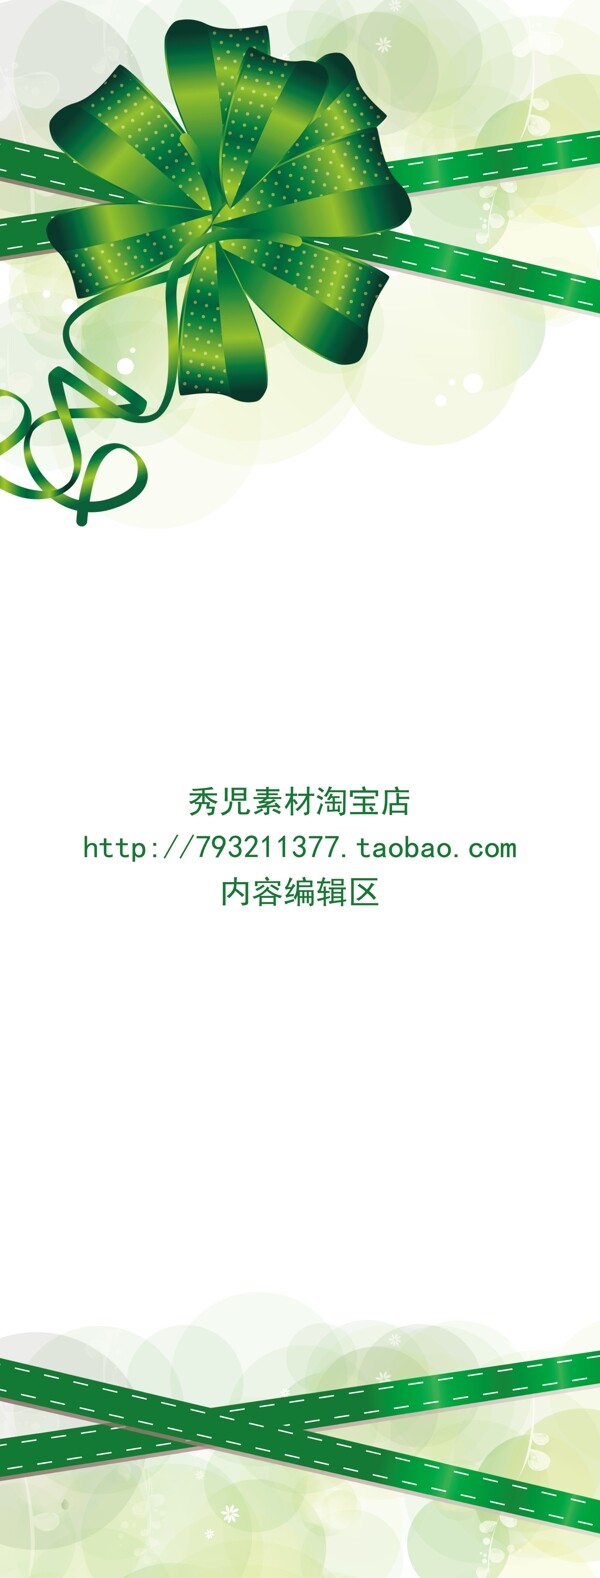 绿色中国结素材展架模板设计画面